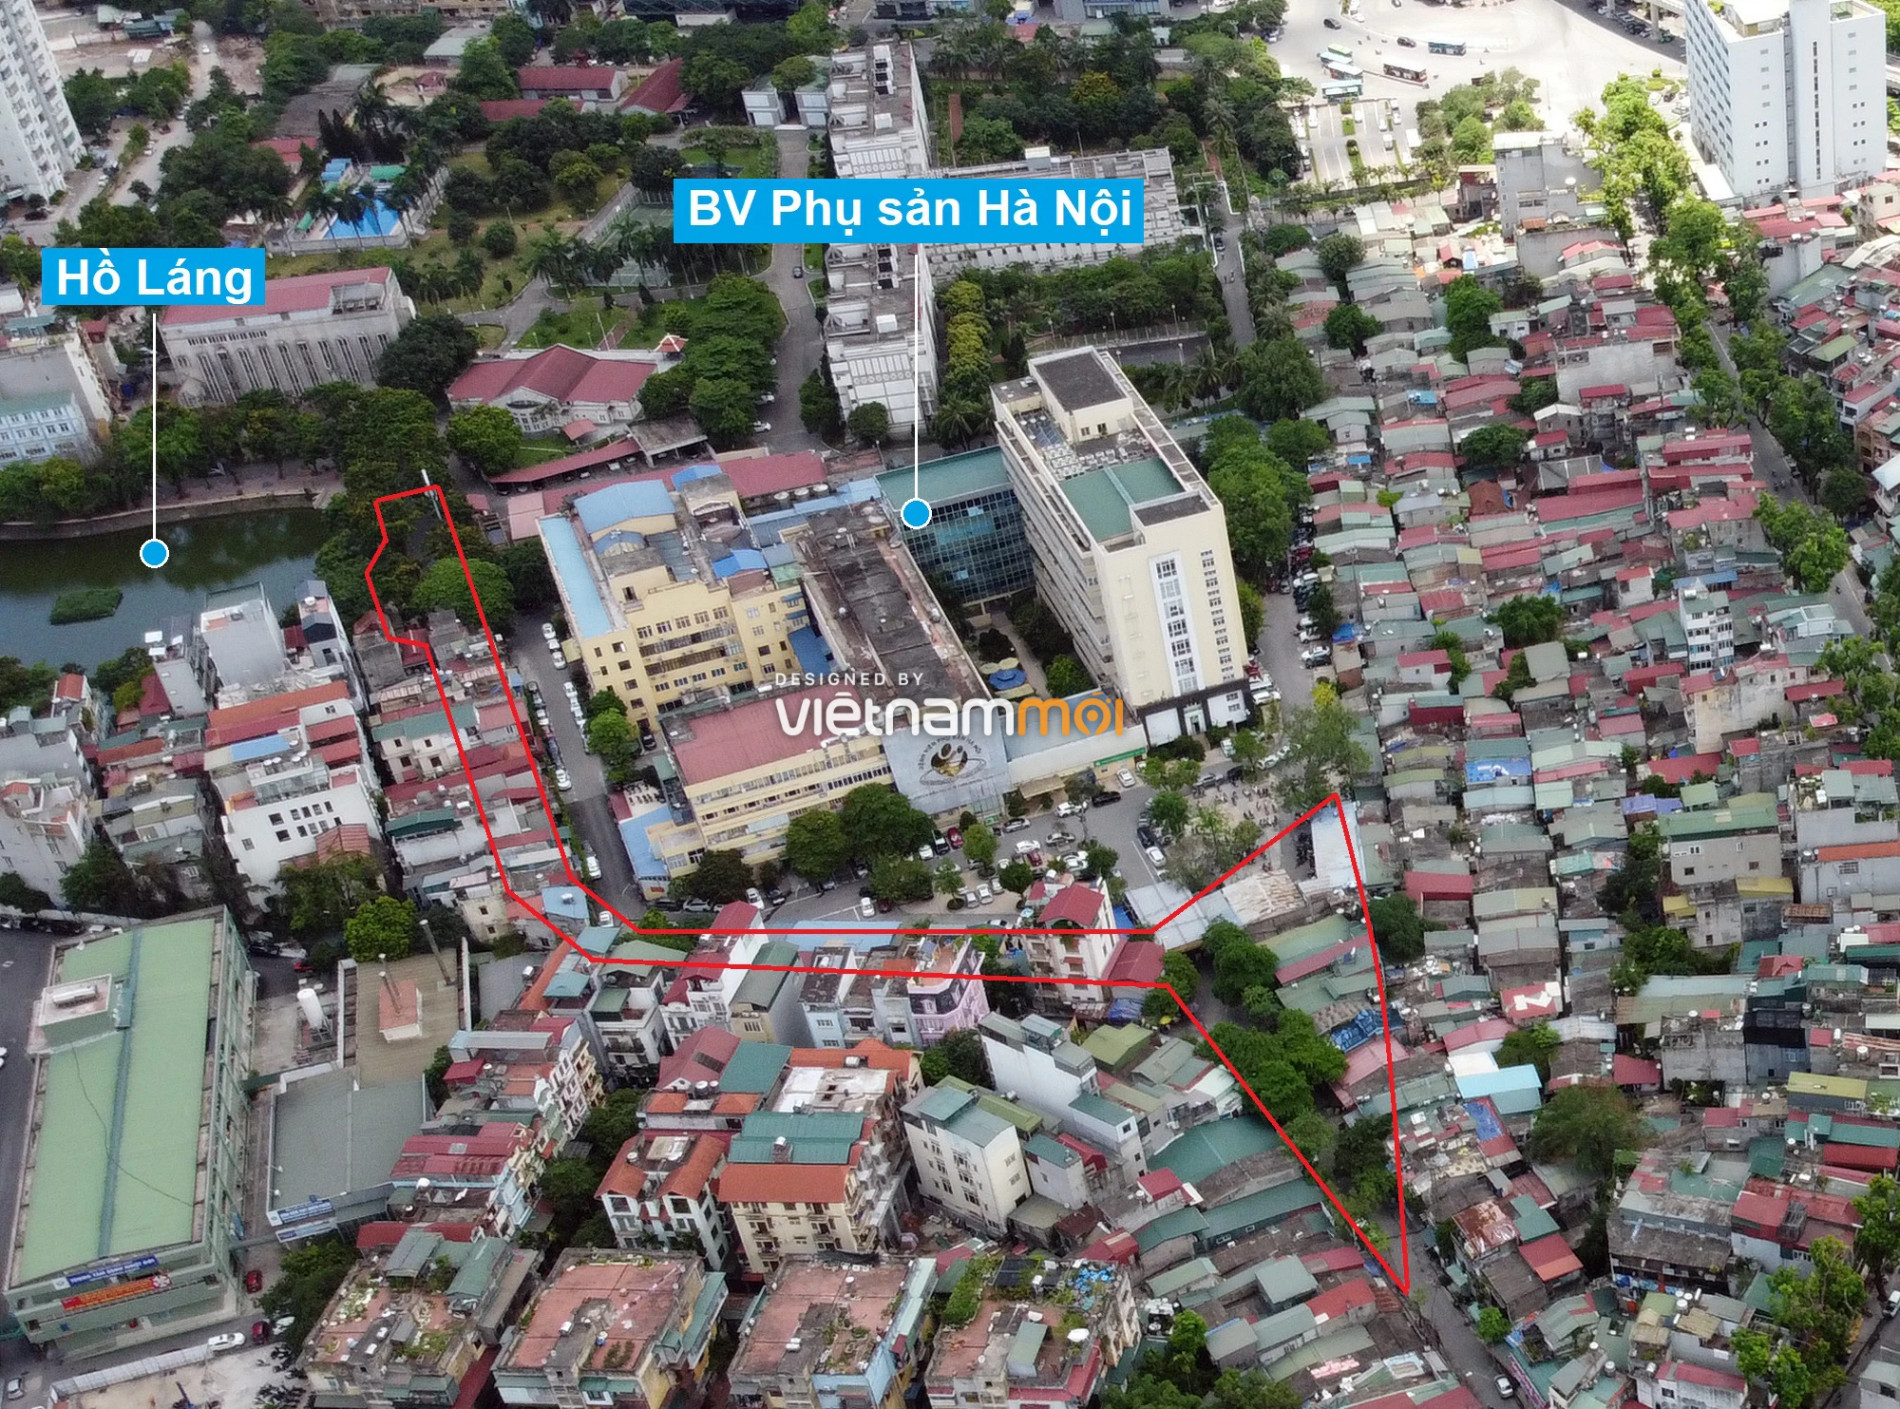 Những khu đất sắp thu hồi để mở đường ở quận Đống Đa, Hà Nội (phần 4) - Ảnh 12.